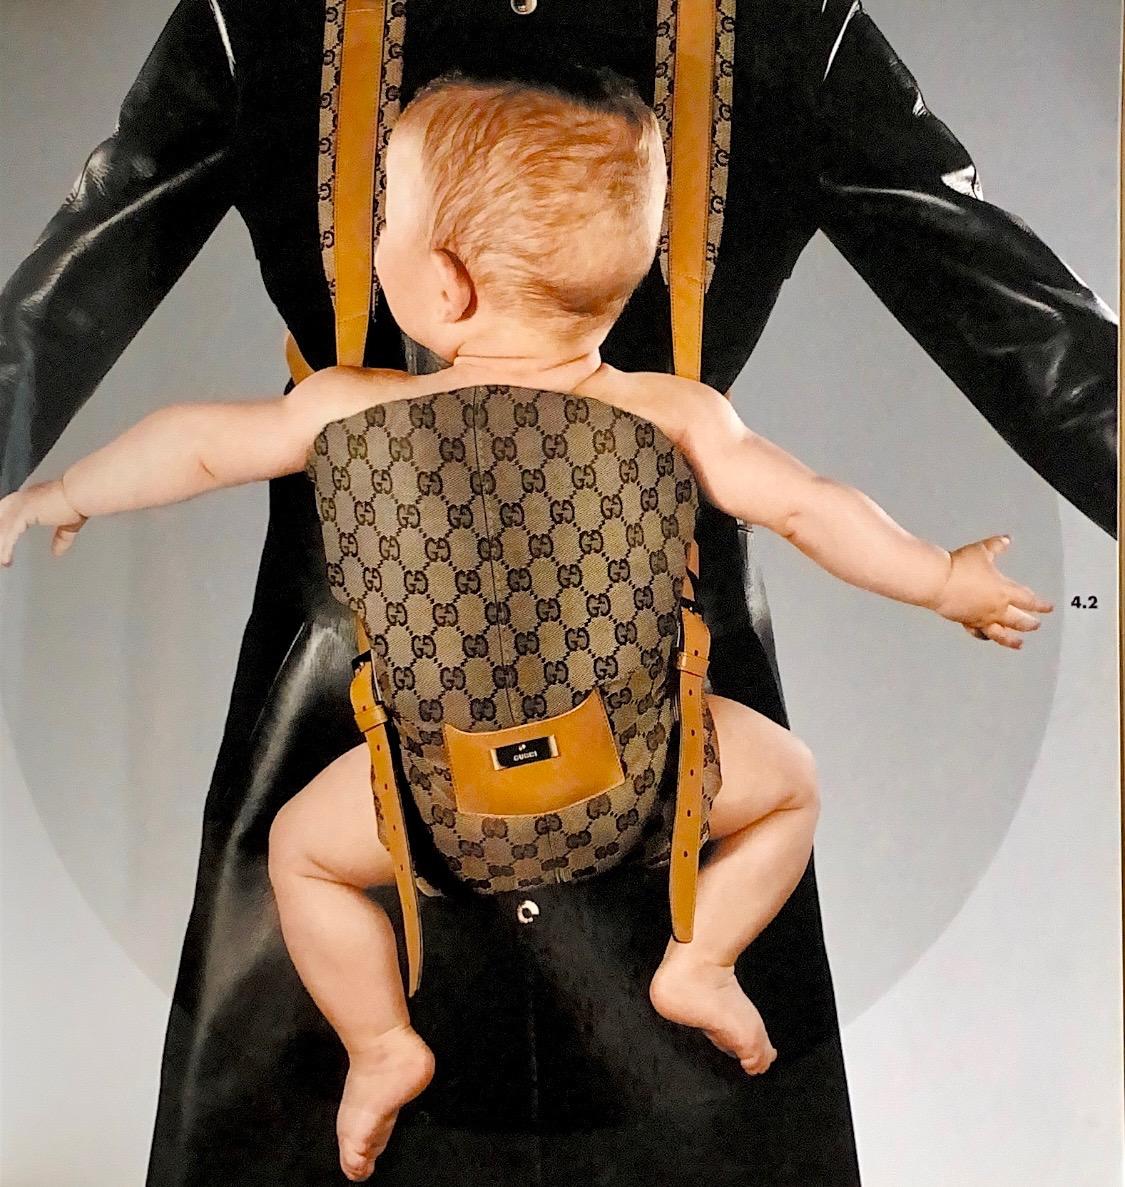 Présentation d'un rare porte-bébé conçu par Tom Ford pour Gucci, sorti dans le cadre de la collection automne-hiver 2000. Des boucles argentées à l'avant et des clips à l'arrière permettent d'ajuster facilement cette pièce. Le monogramme GG tissé